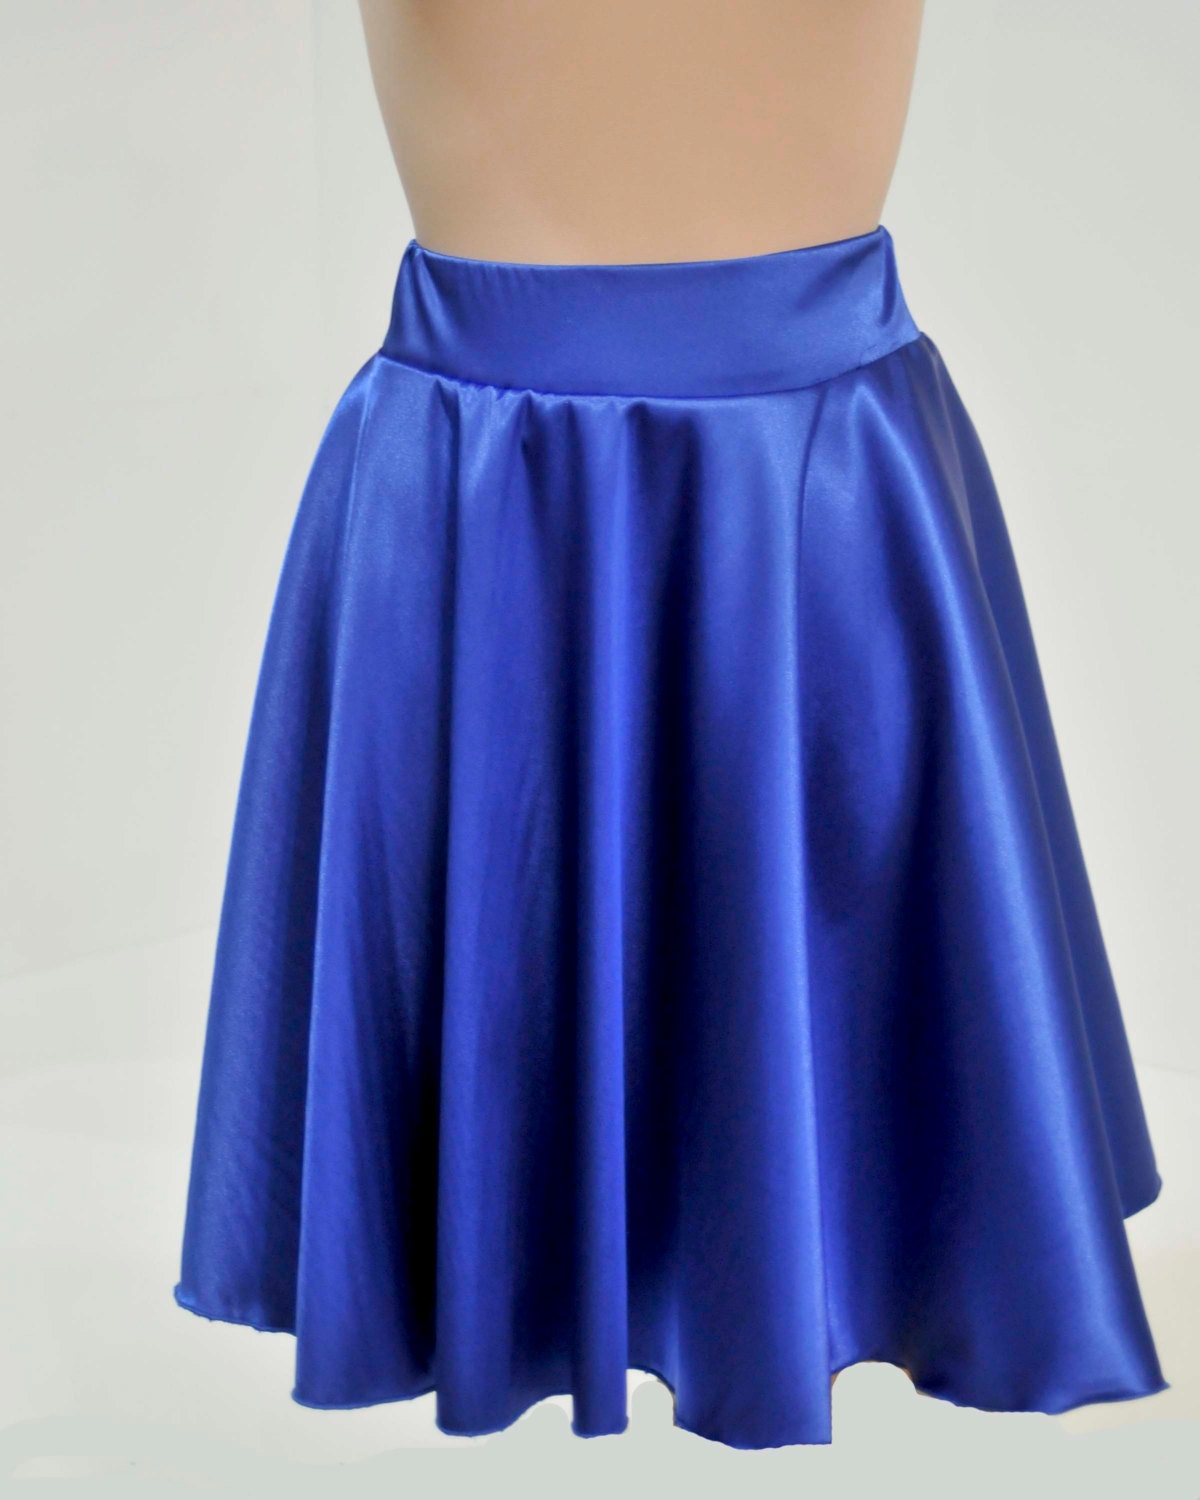 Satin Stretch Royal Skirt ...size 10-12..